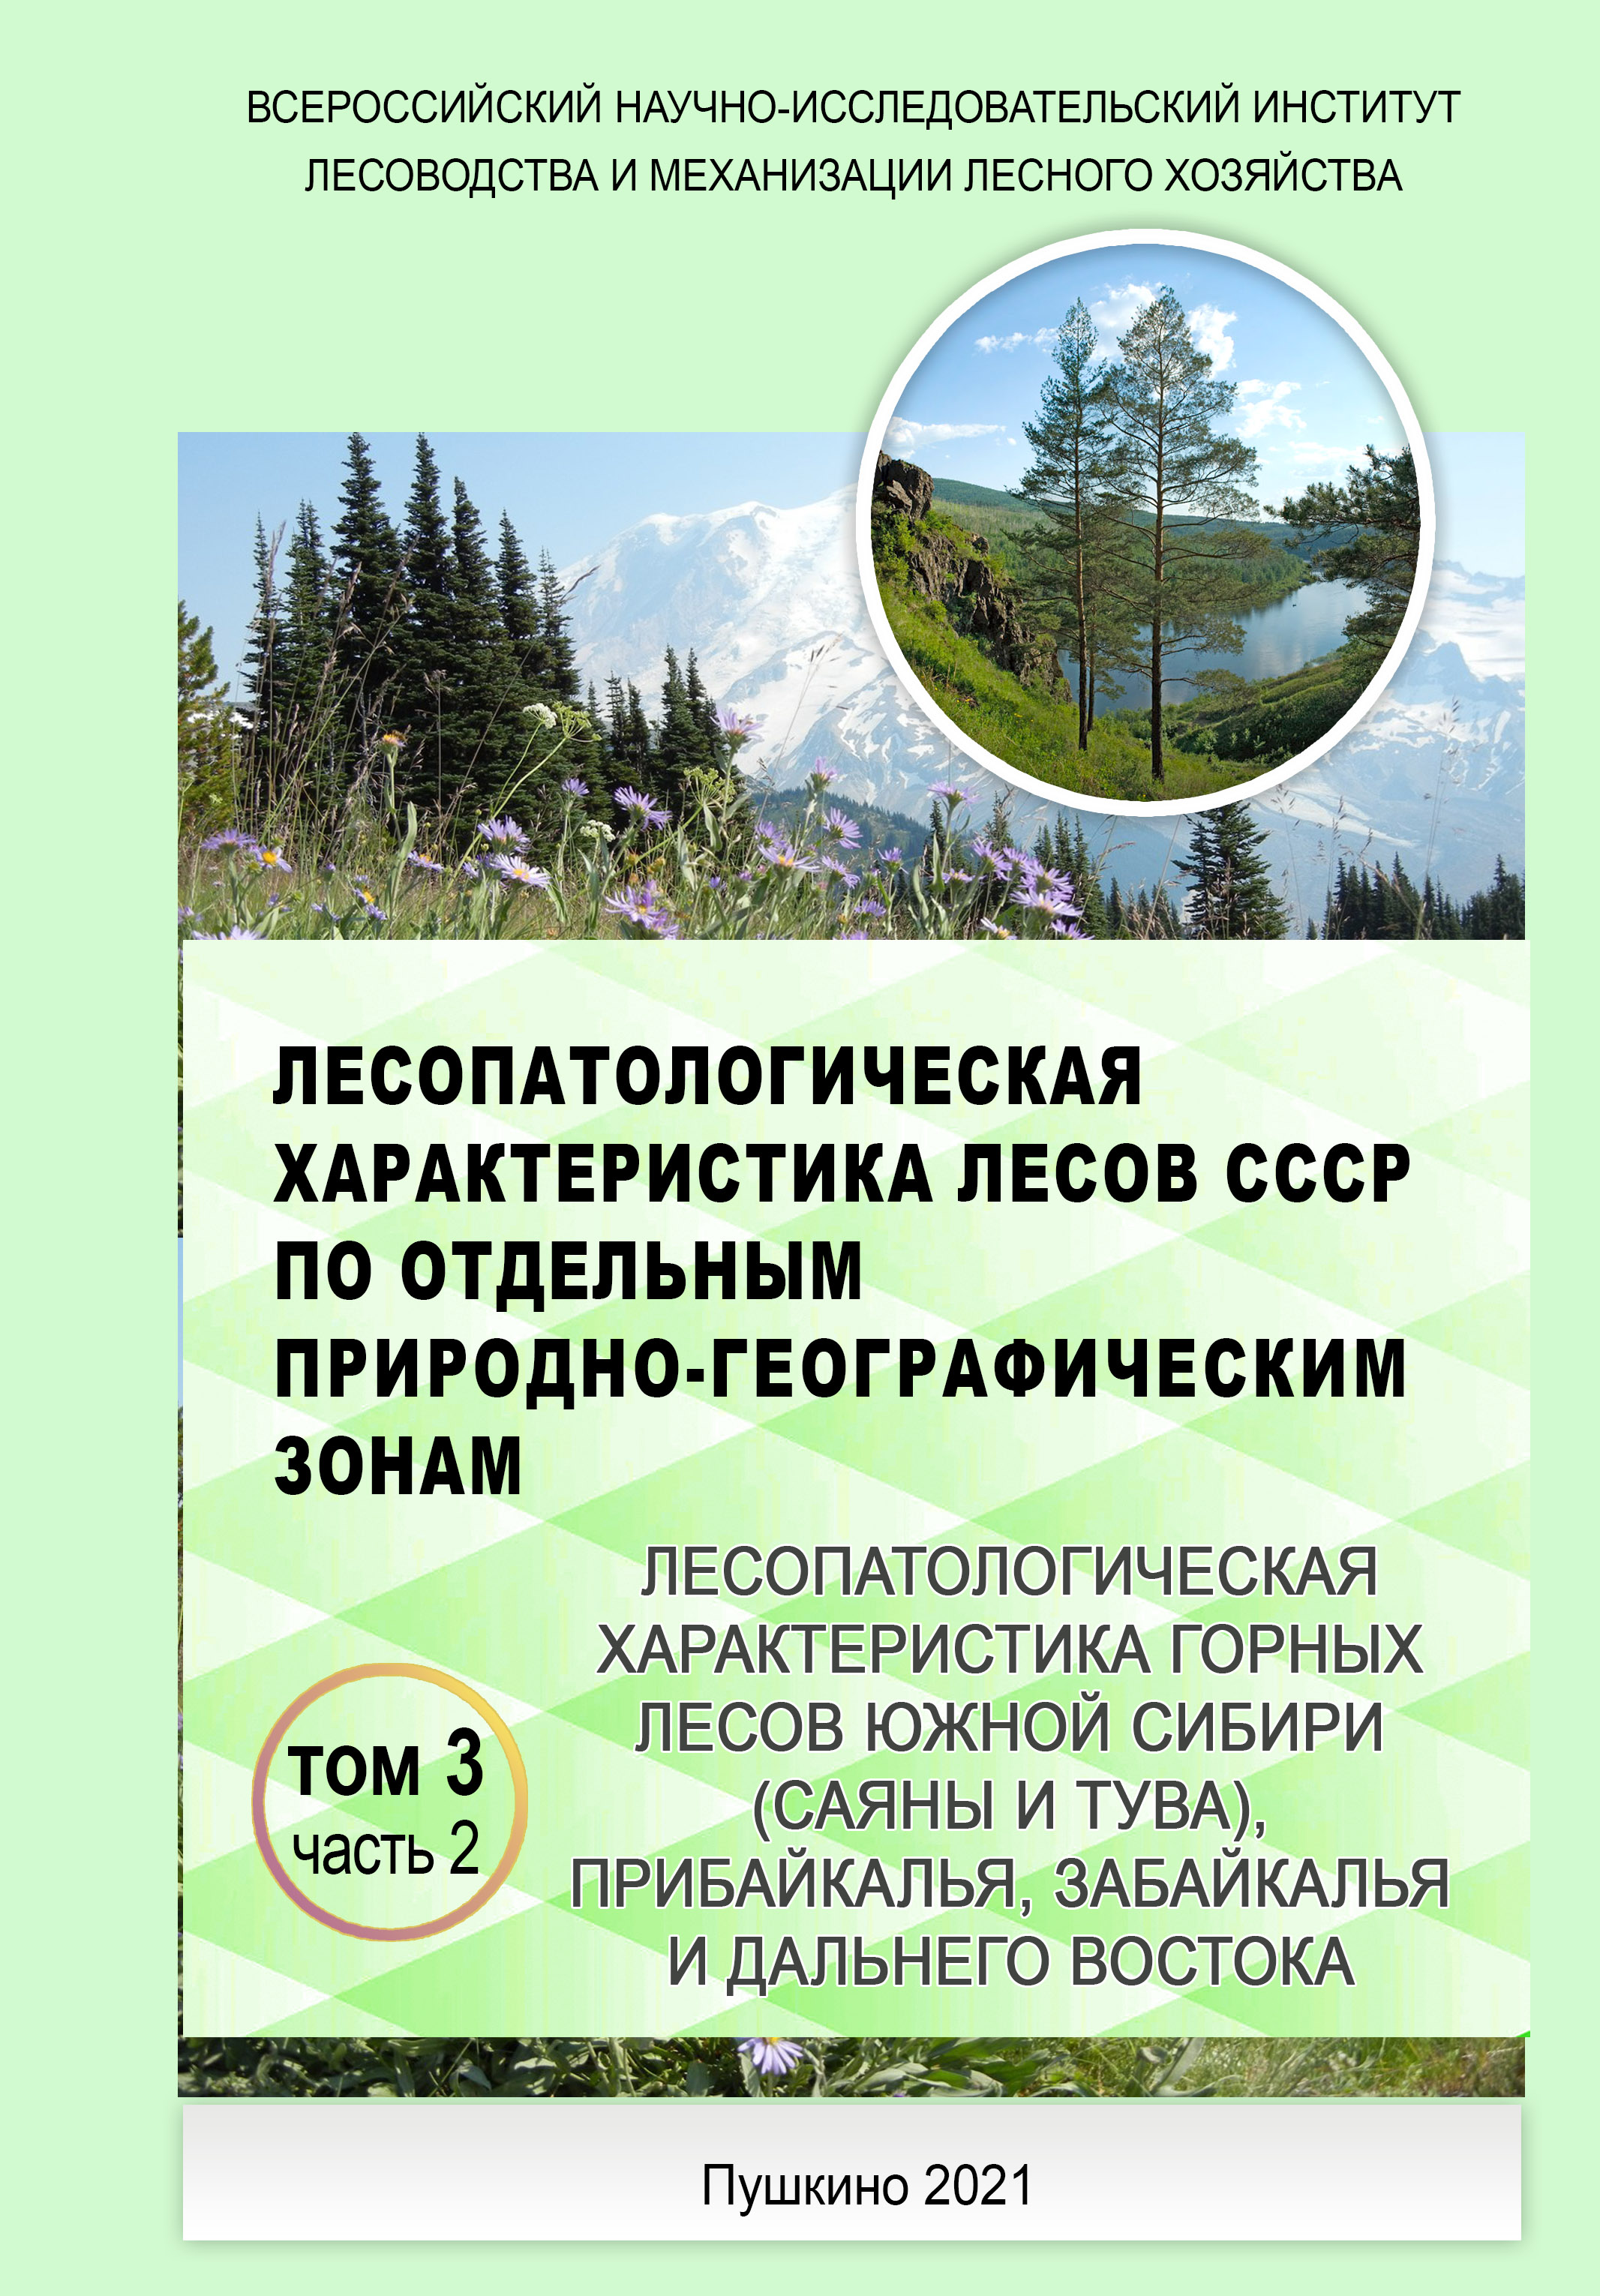 Лесопатологическая характеристика горных лесов СССР том 3 часть 2